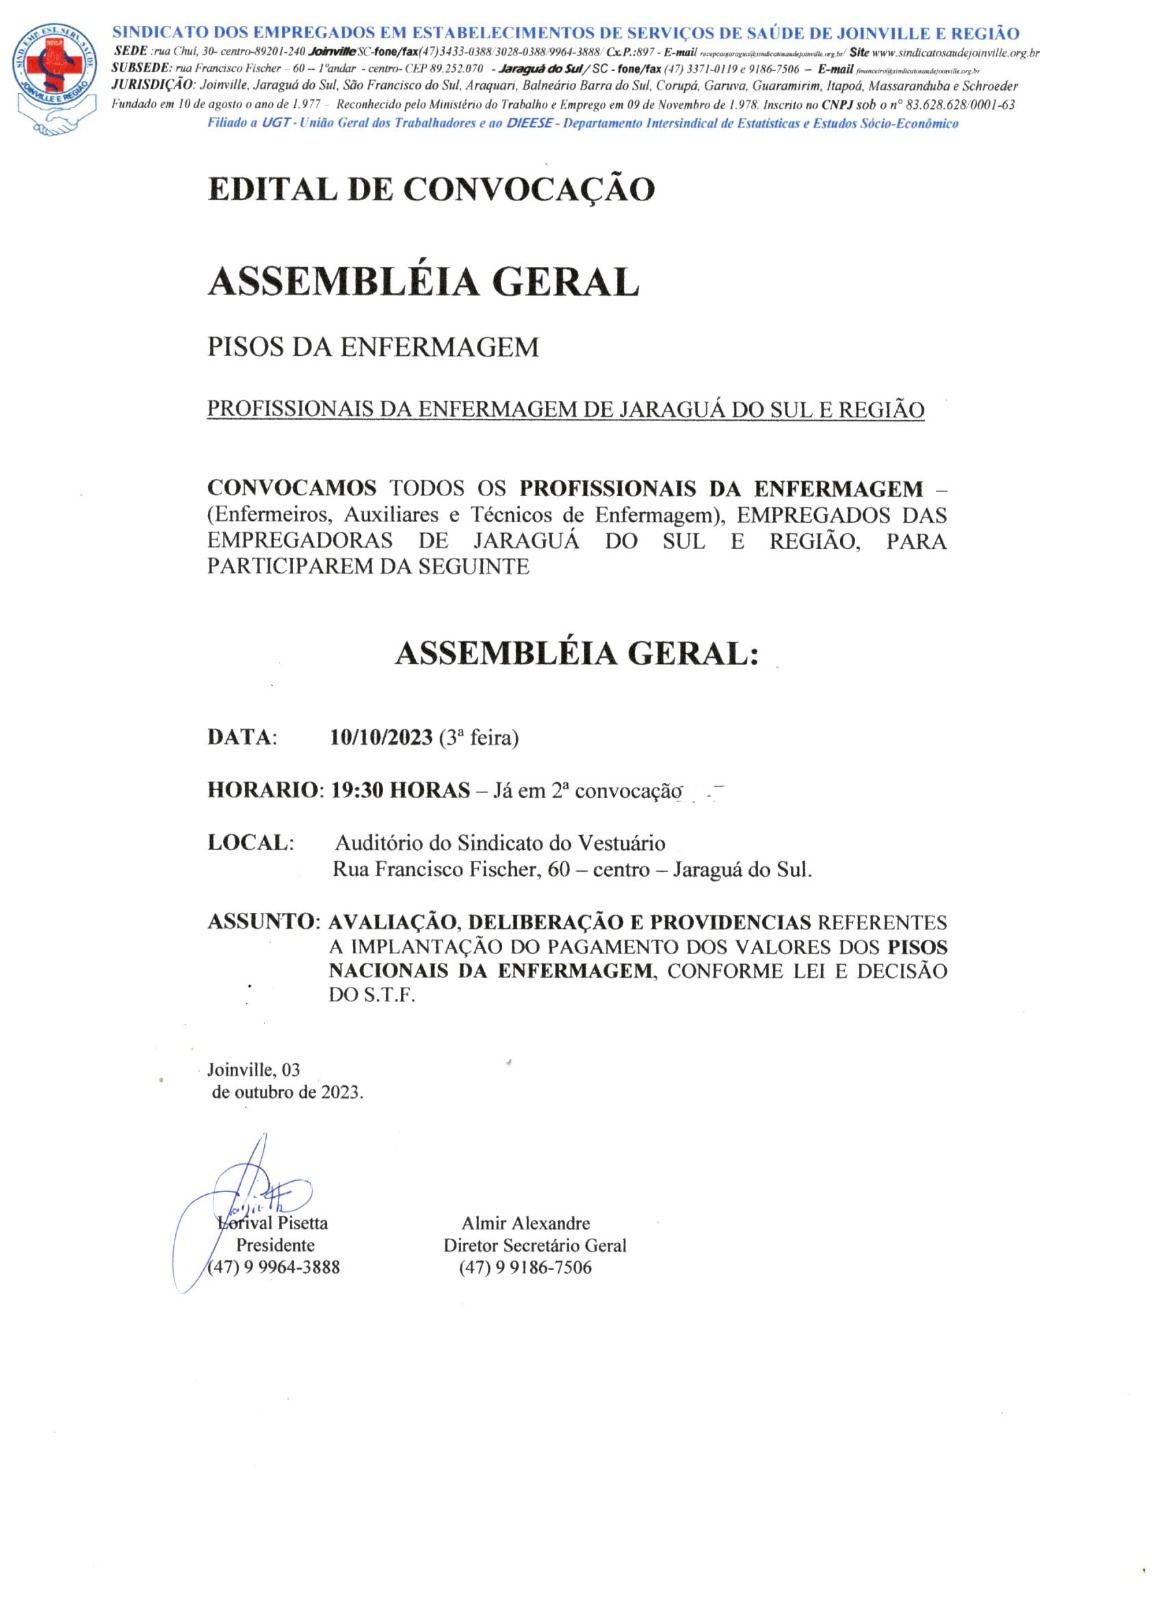 Edital de Convocação Assembléia Geral Jaraguá do Sul.